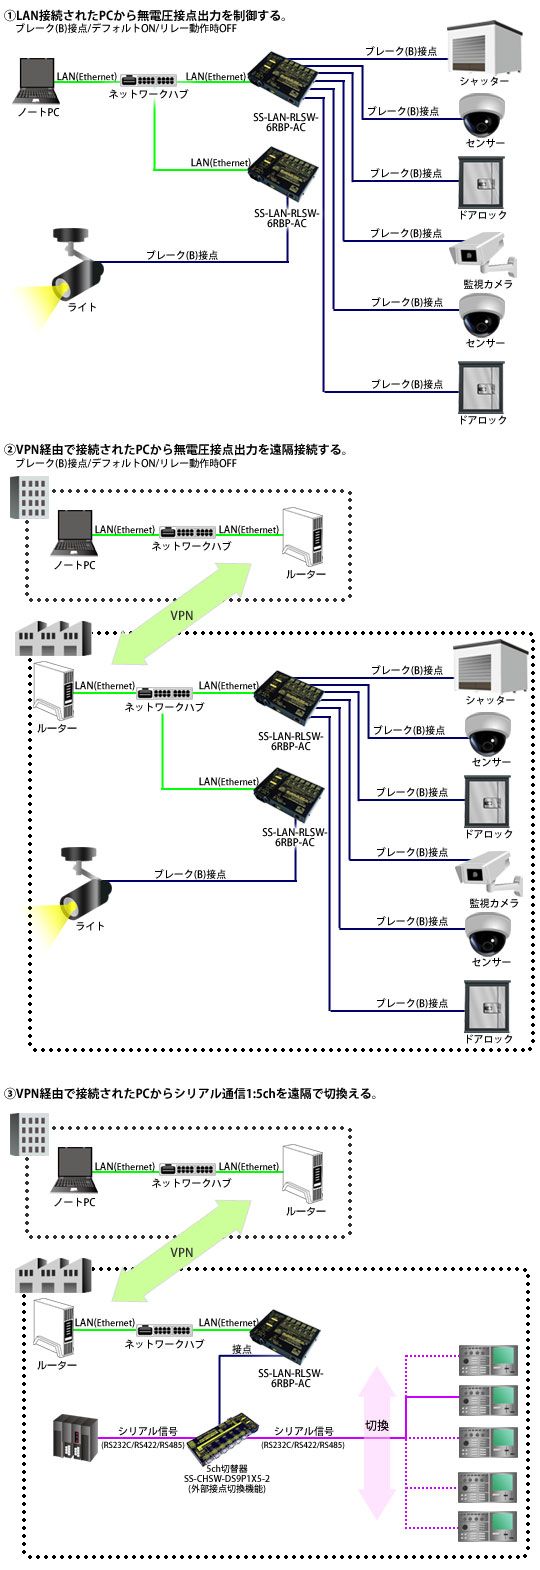 SS-LAN-RLSW-6RBP-AC接続例